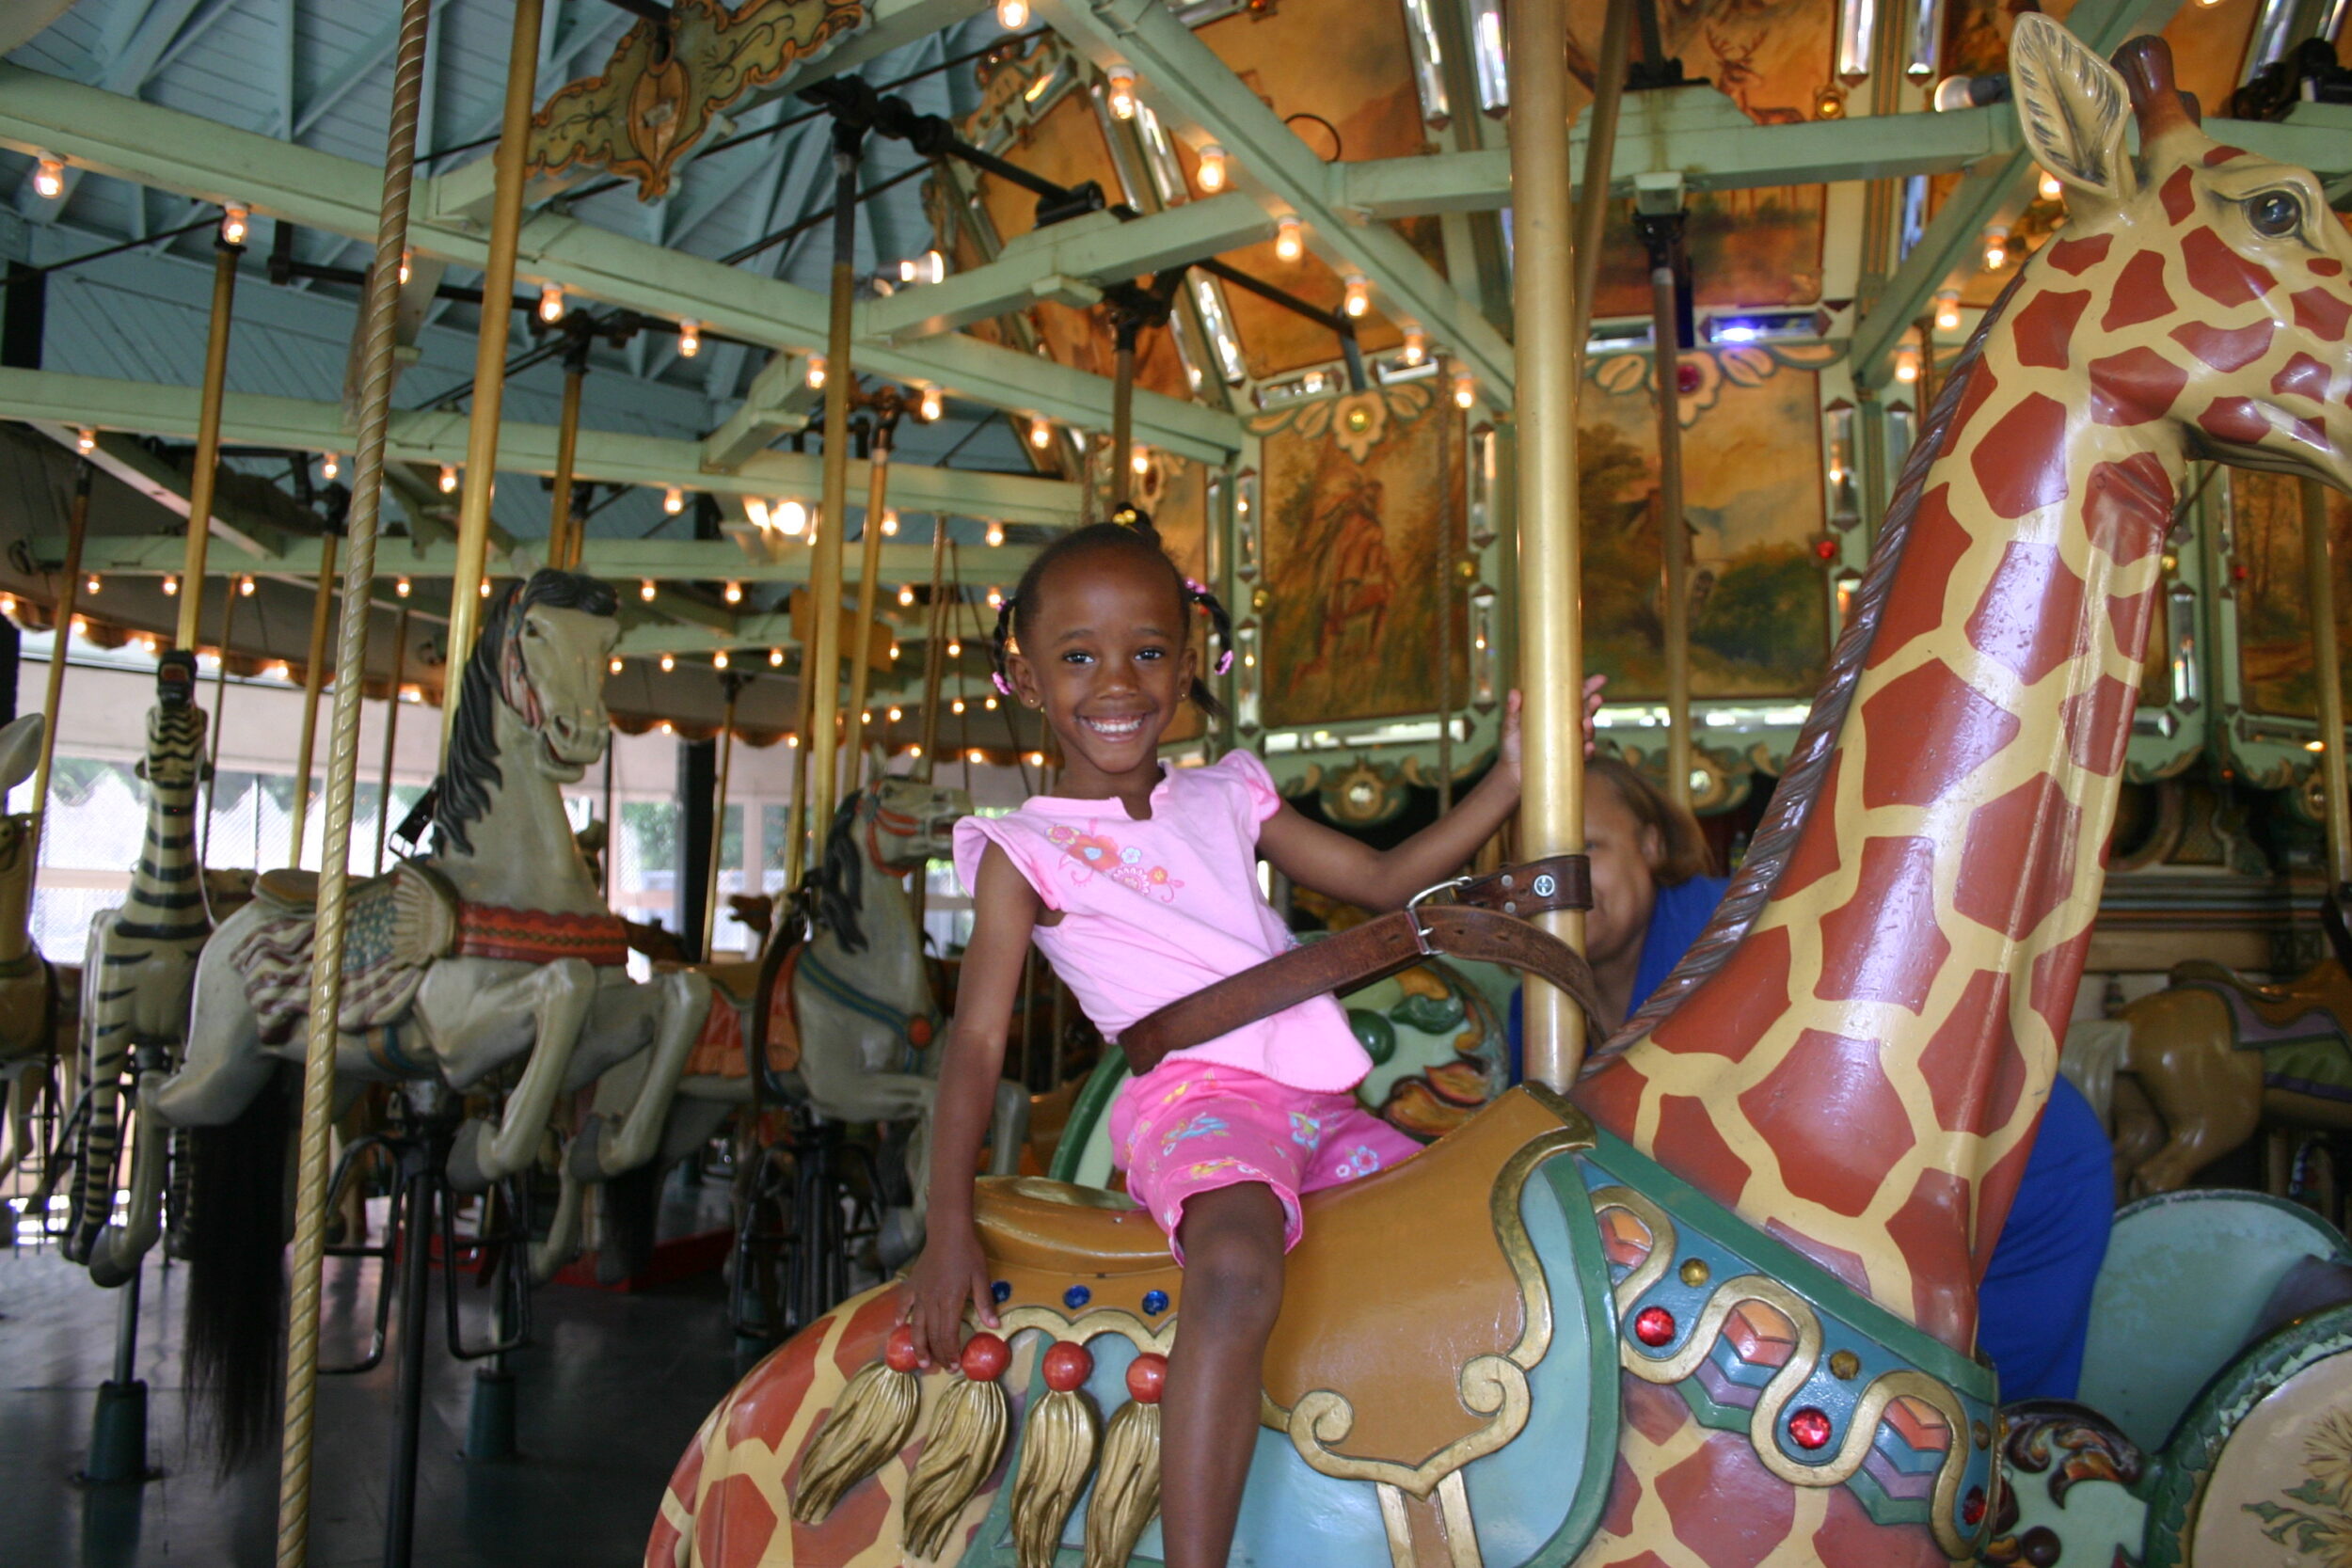 A little girl rides a carousel giraffe.